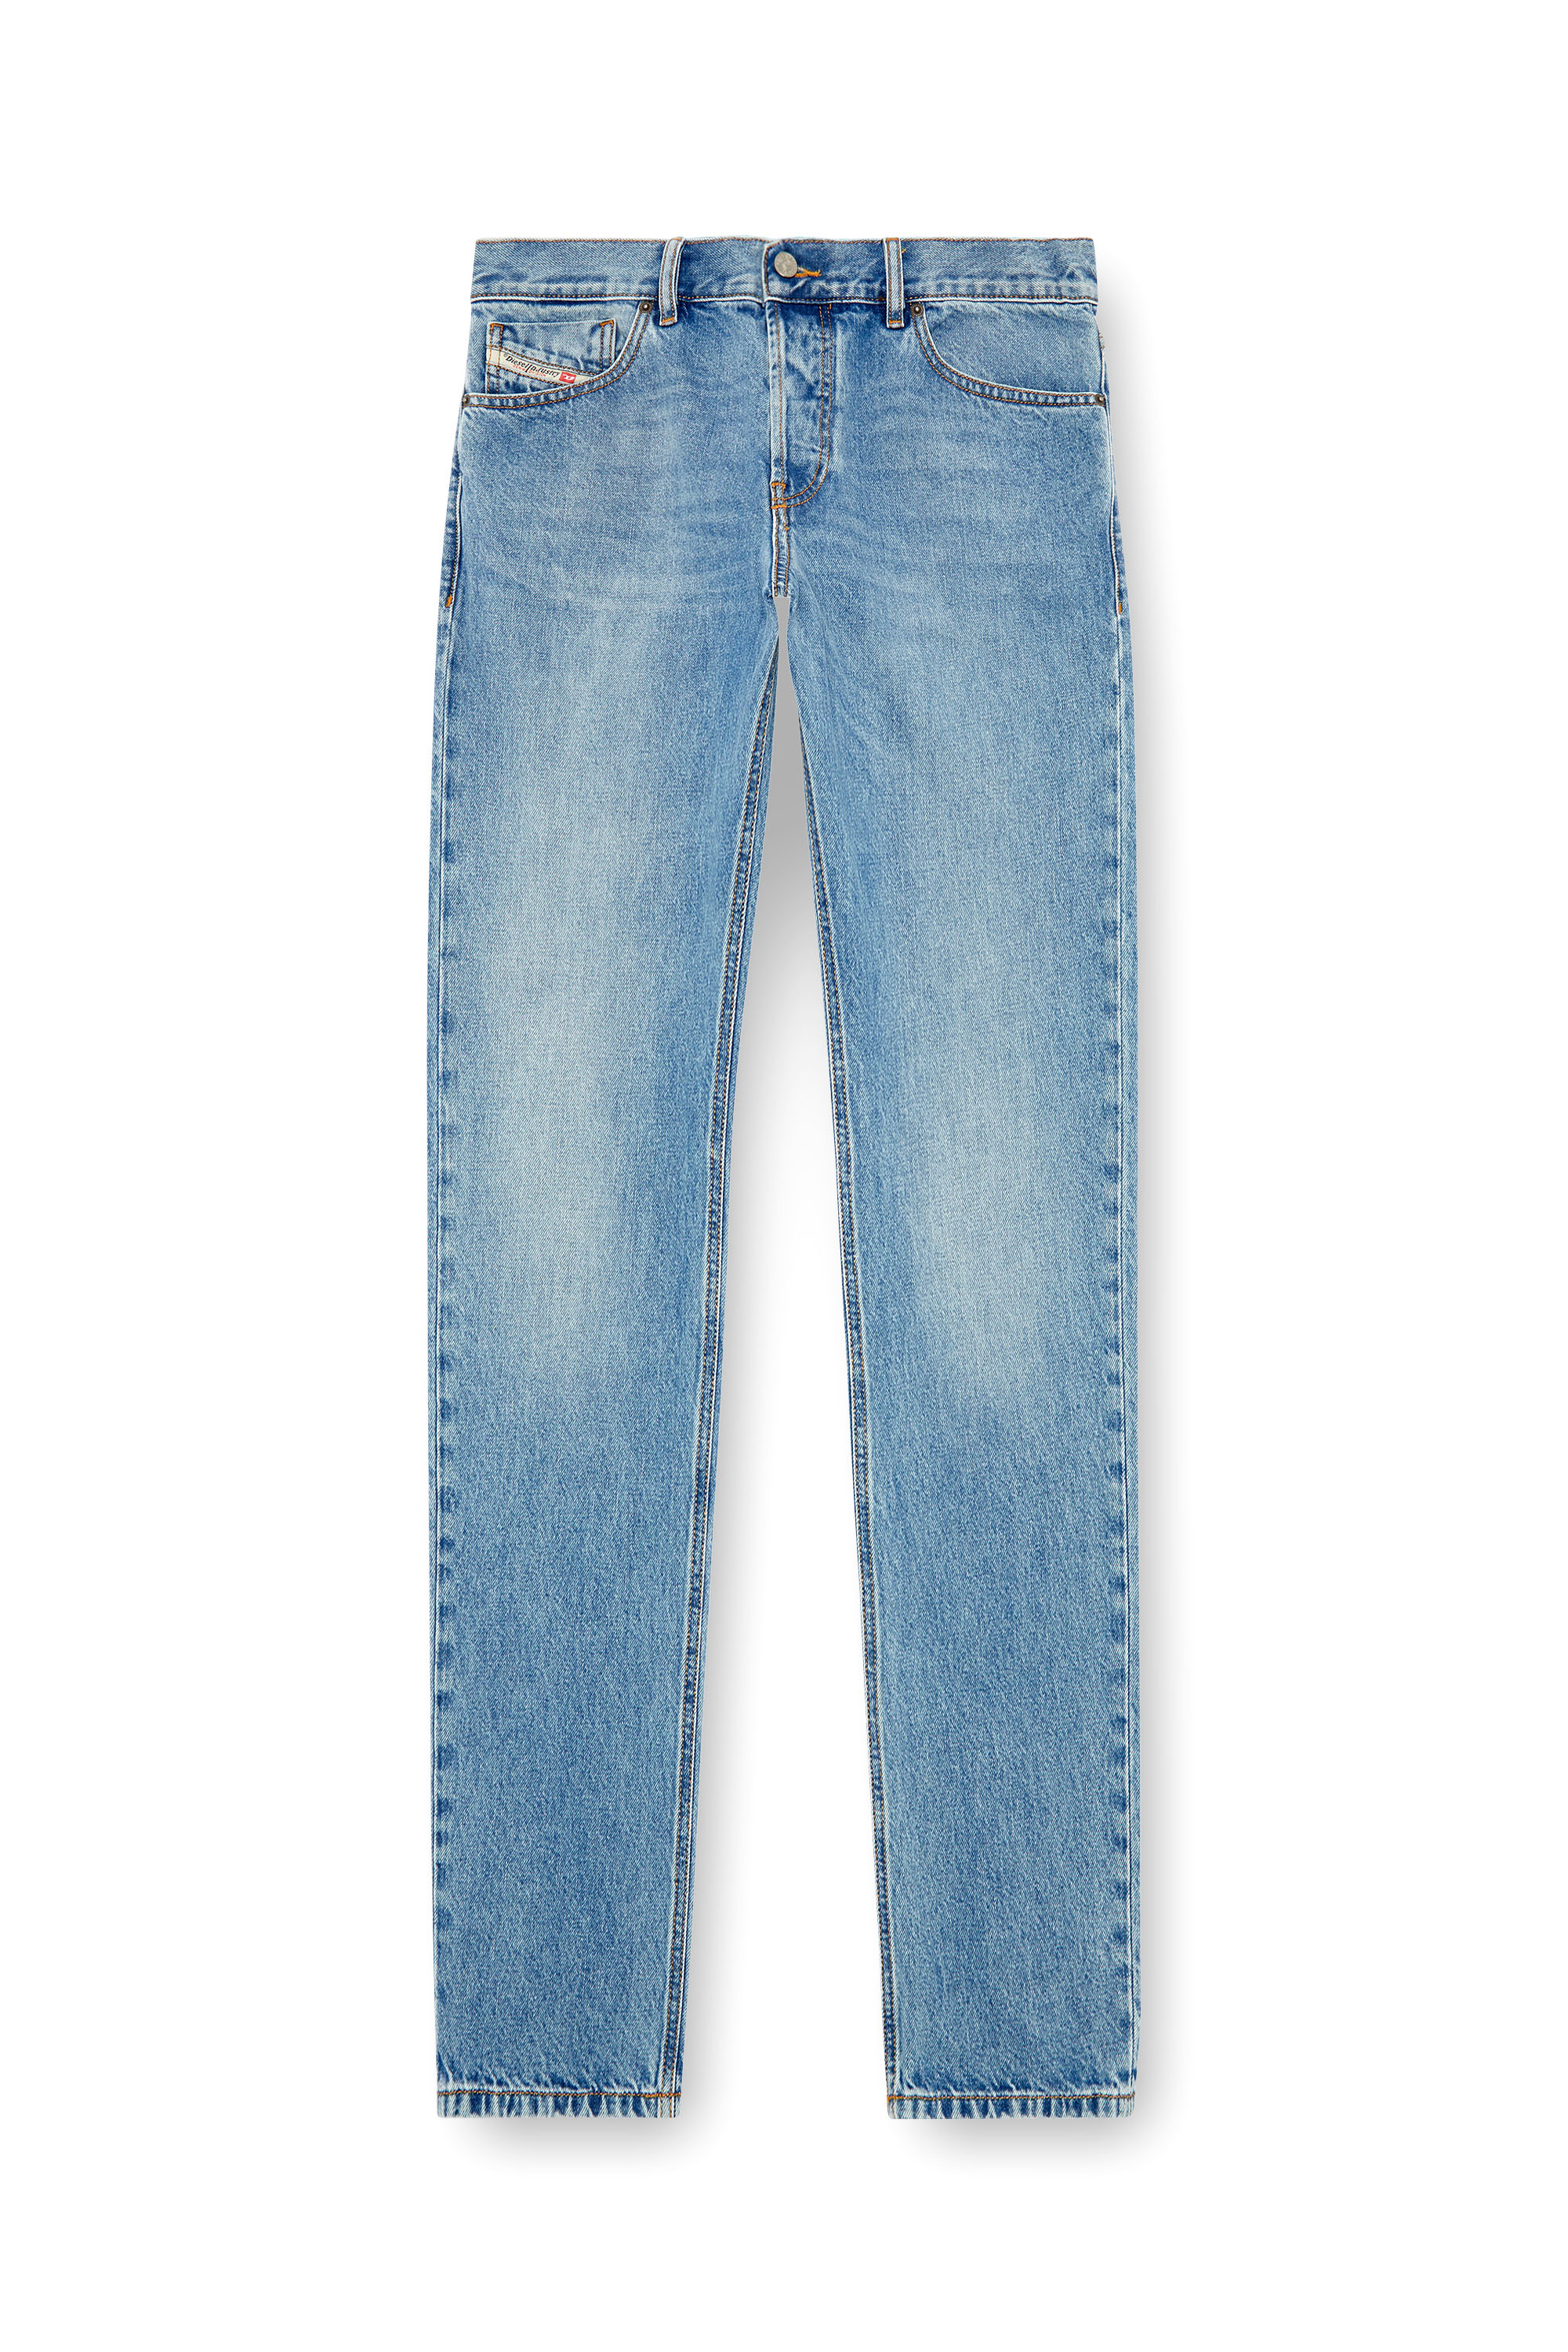 Men's Straight Jeans | Light blue | Diesel 1995 D-Sark